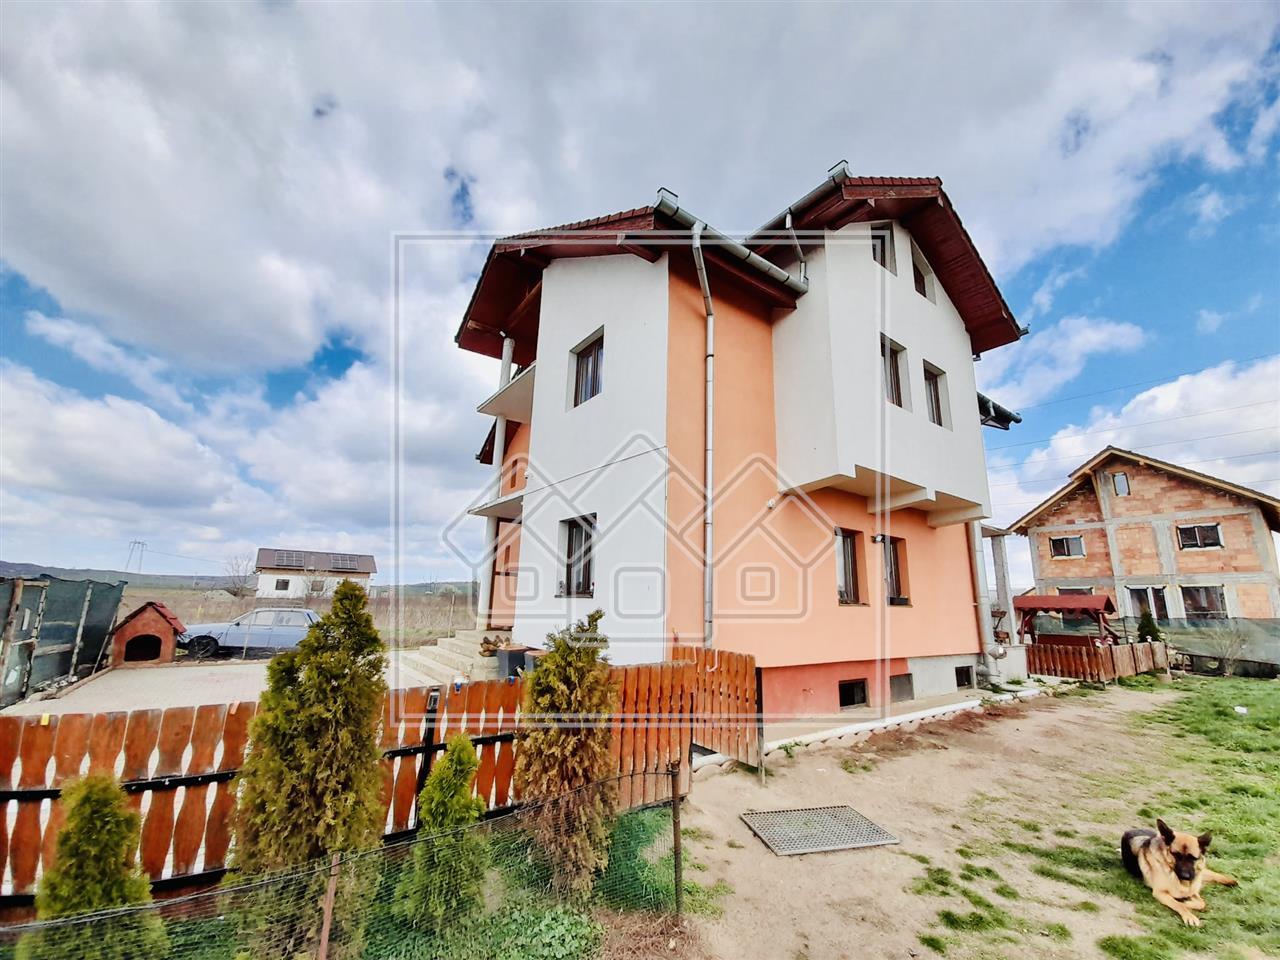 Casa de vanzare in Sibiu - individuala - 180 mp utili - Zona Veterani